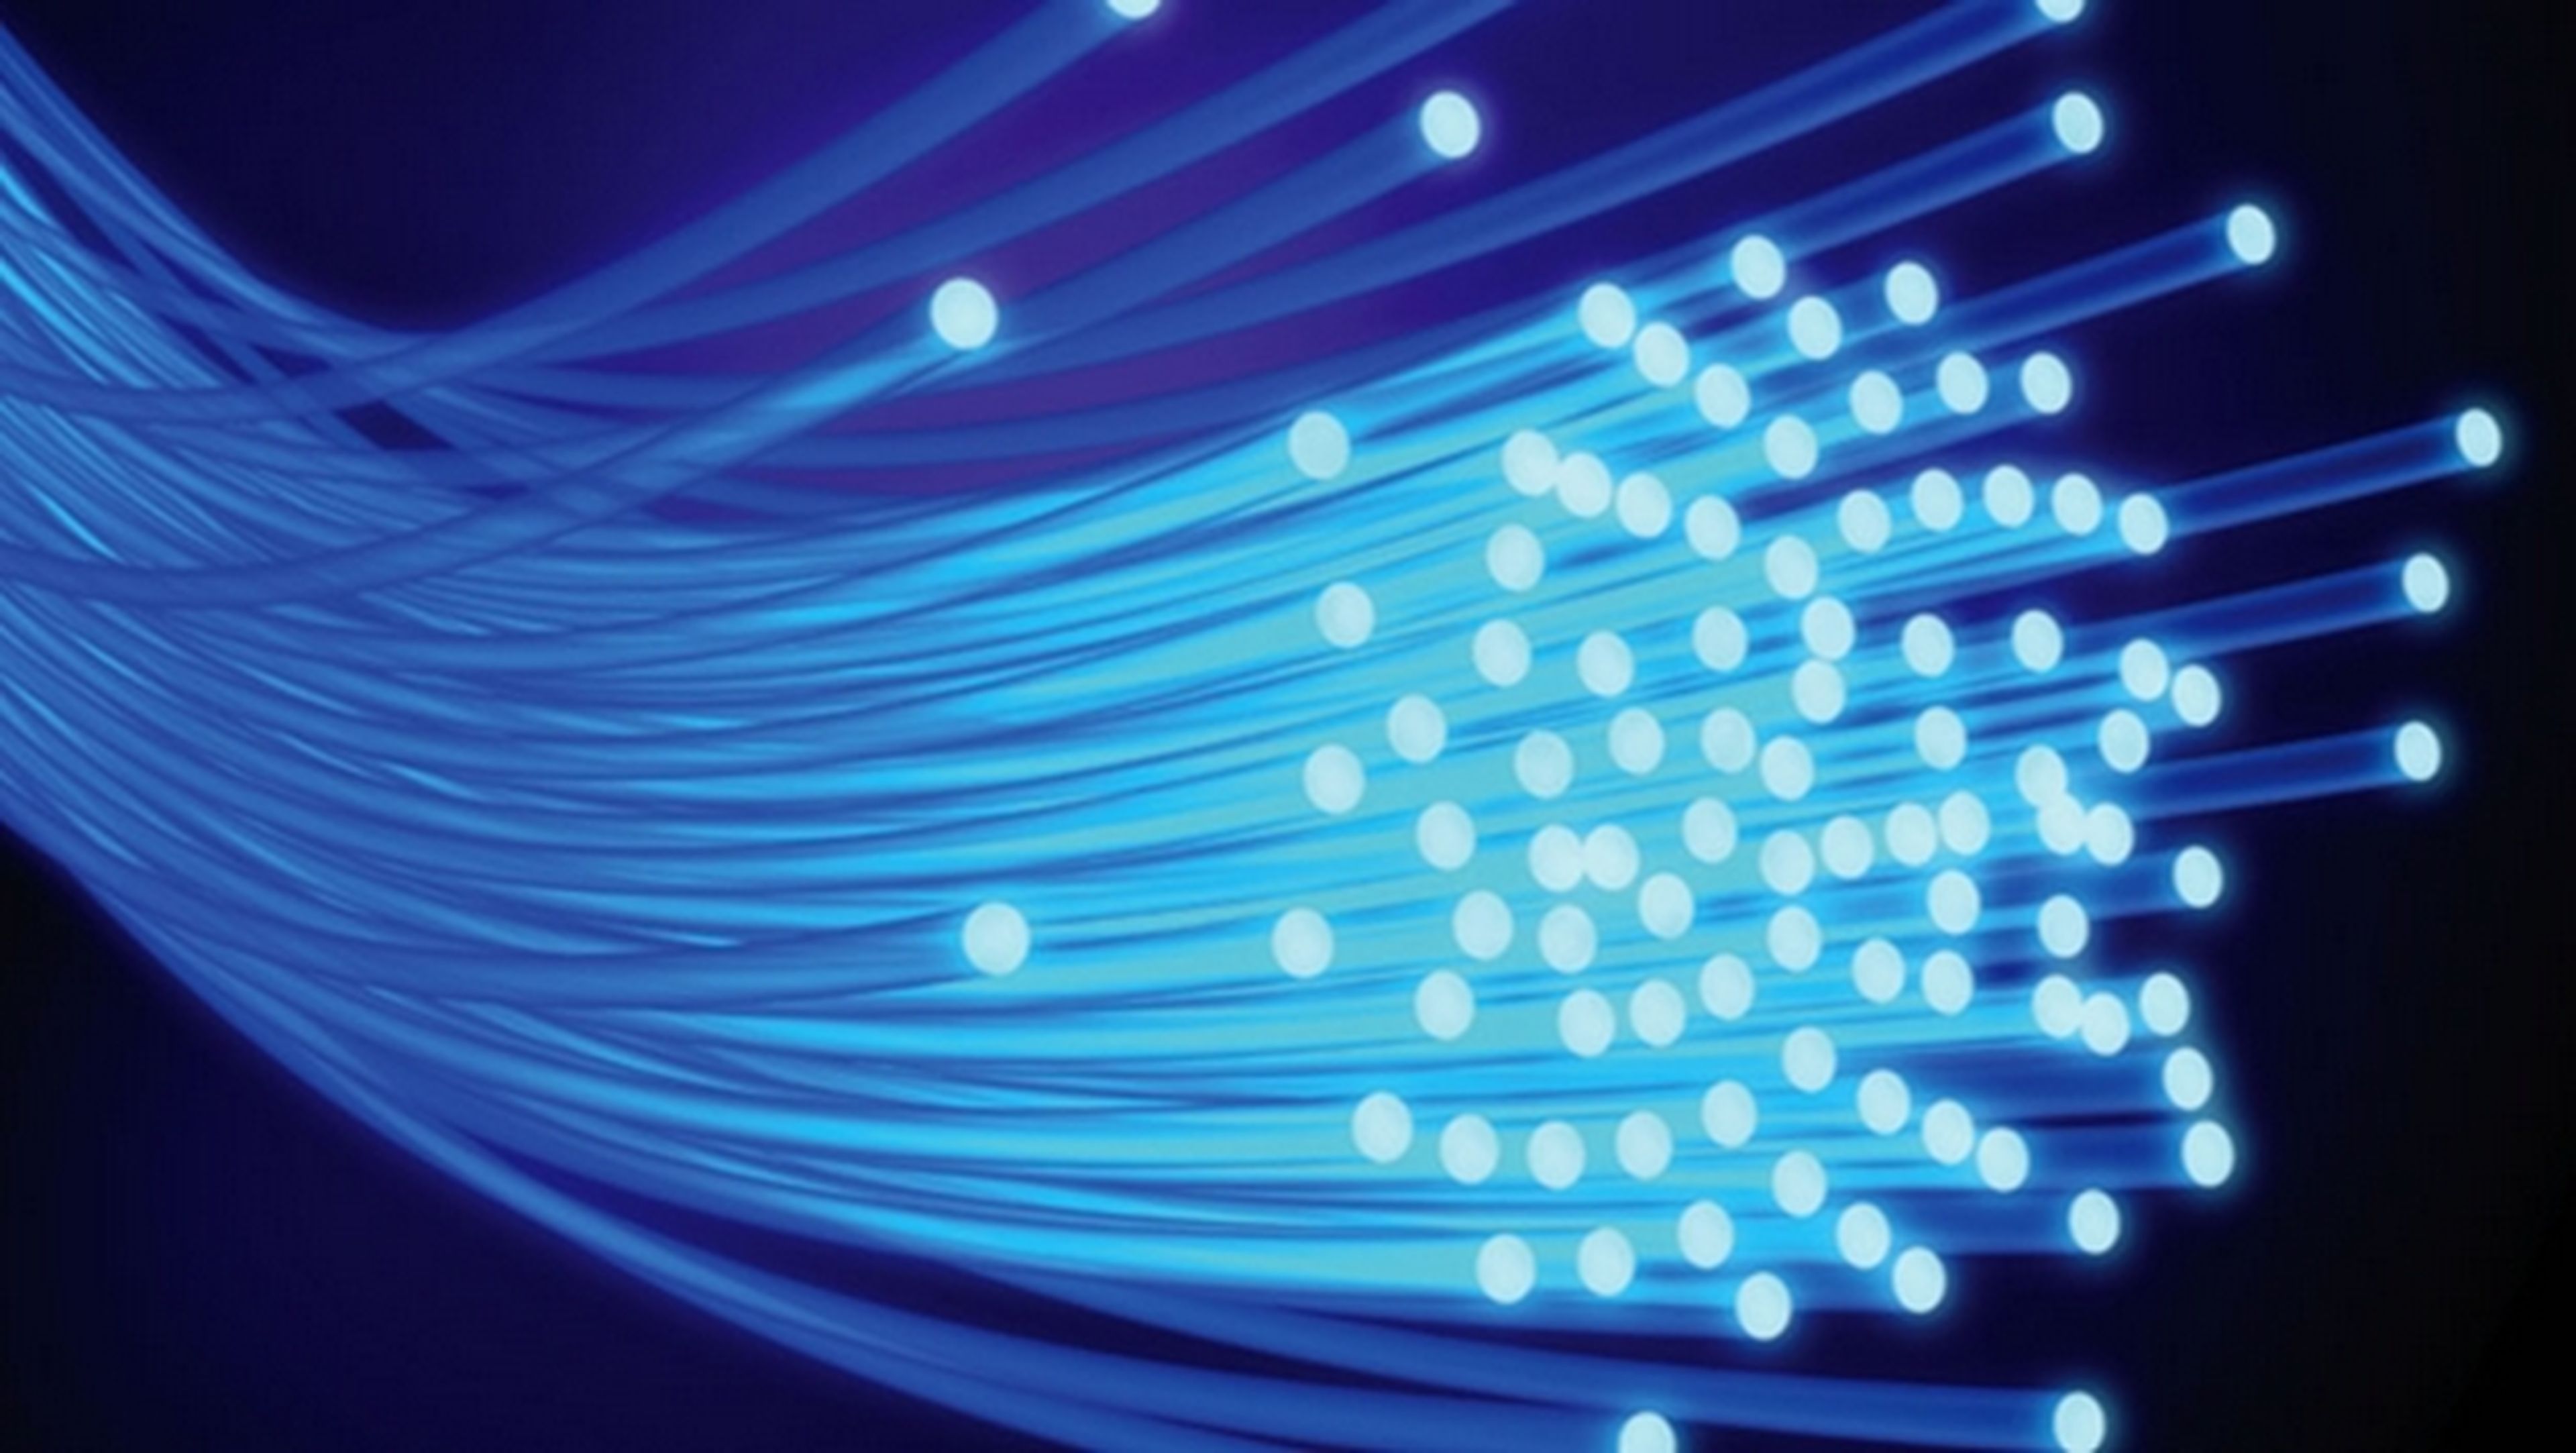 La fibra óptica ha aumentado la cobertura y bajado las tarifas. ¿Merece la pena abandonar el ADSL para pasarse a la fibra?